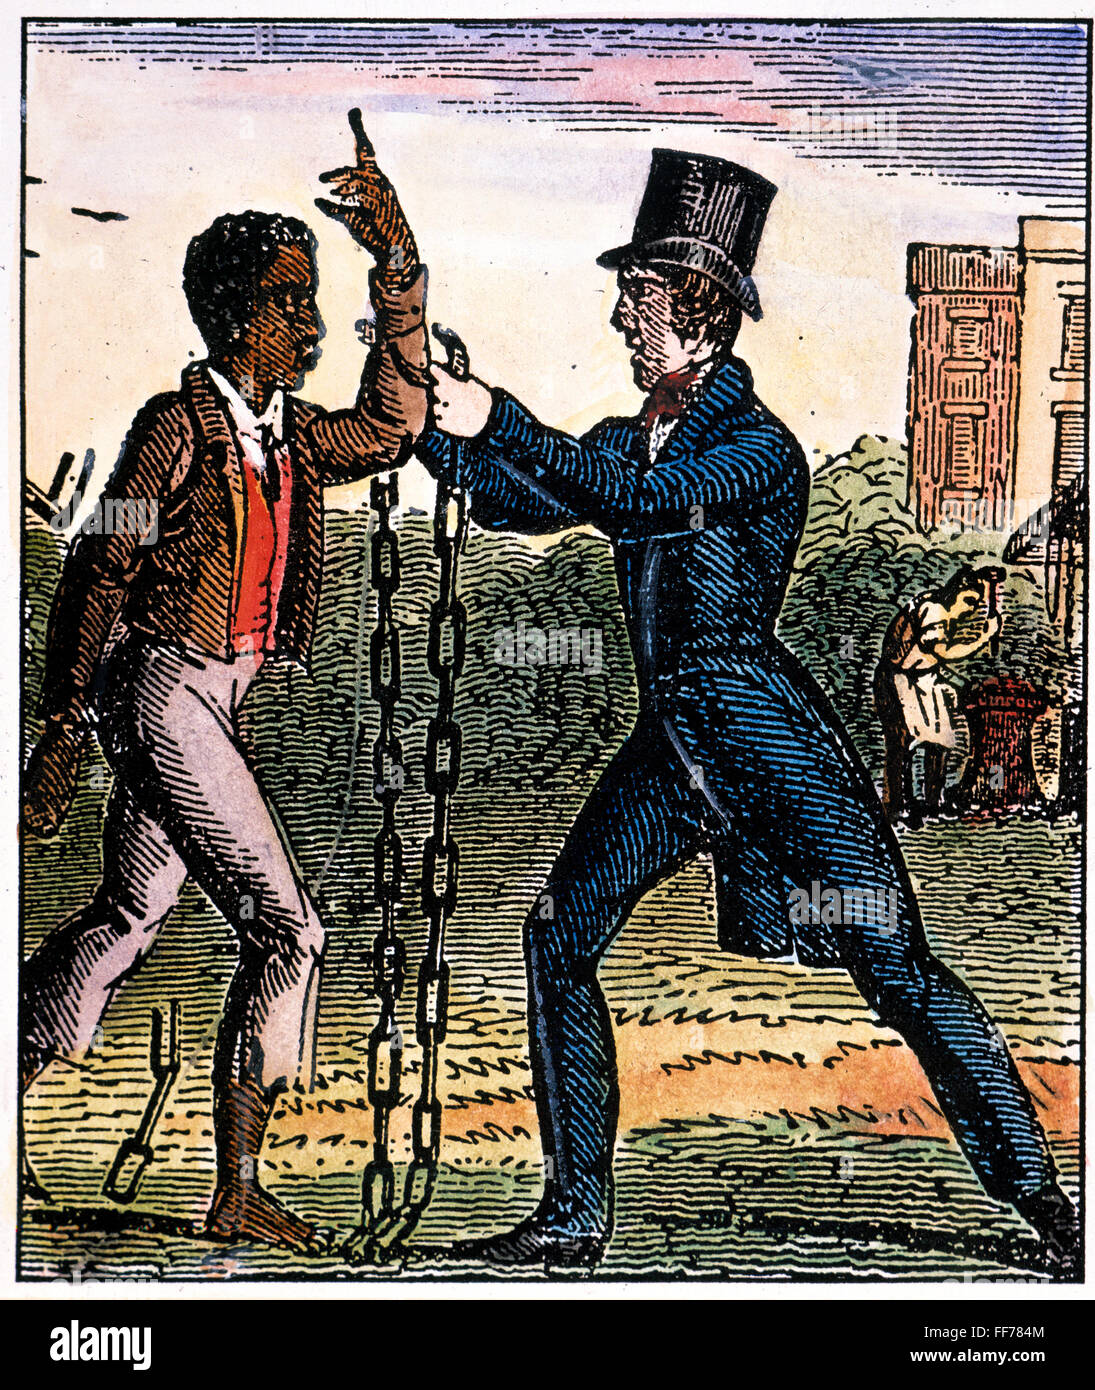 EINE Abschaffung der Todesstrafe /nfreeing ein Sklave von seinen Fesseln. Farbe Holzschnitt, c1840, von einem amerikanischen Anti-Sklaverei-Almanach. Stockfoto